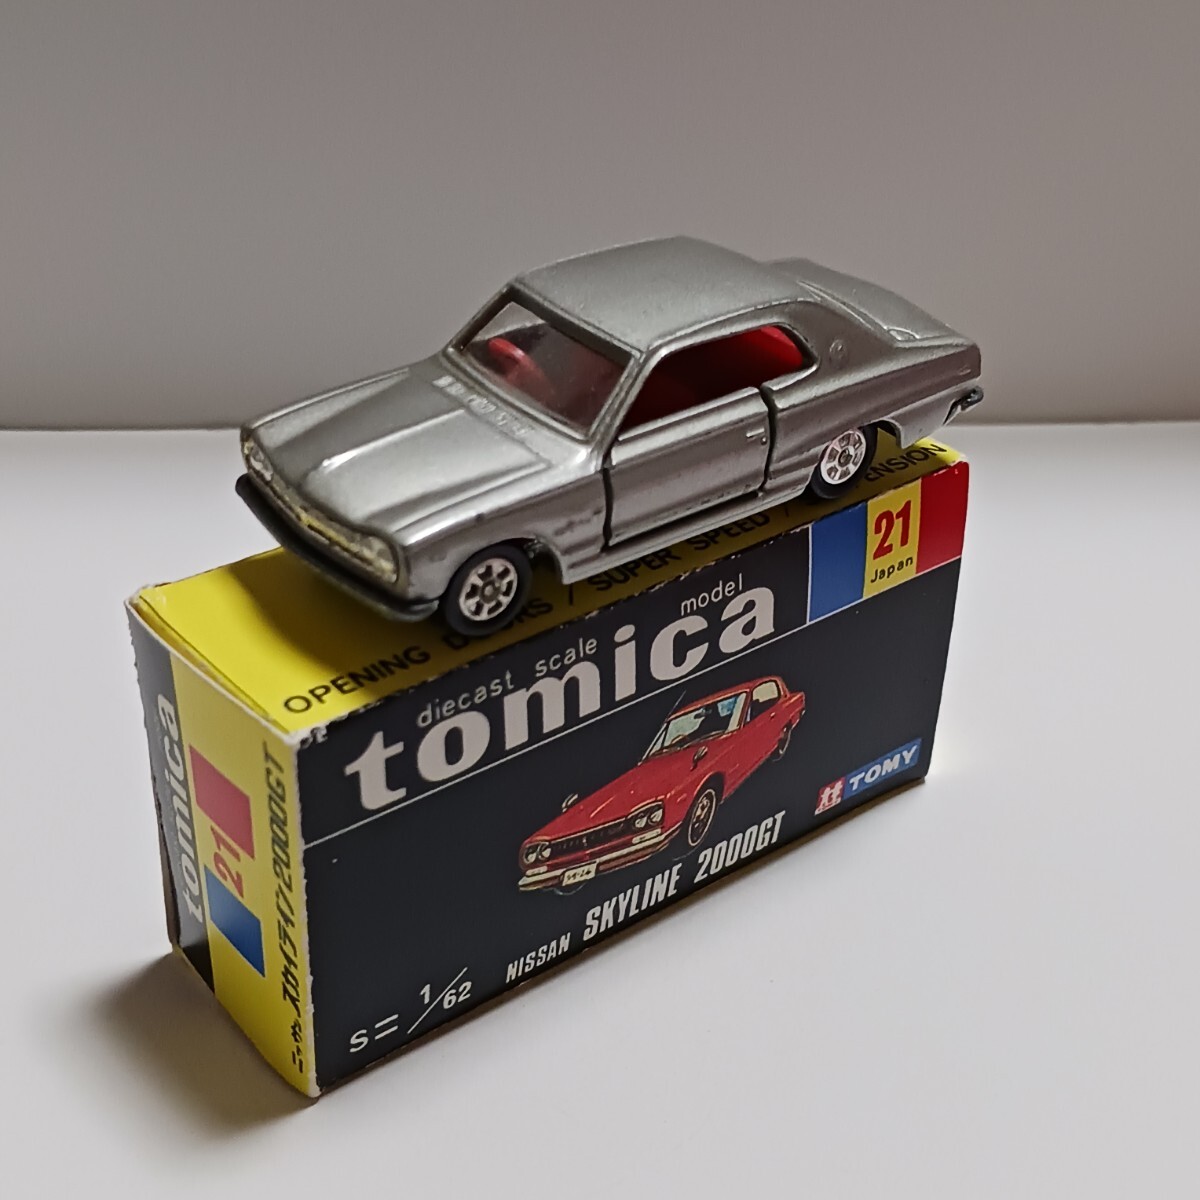  Tomica 21 Nissan Skyline 2000GT копирование коробка ( дополнение ) имеется 